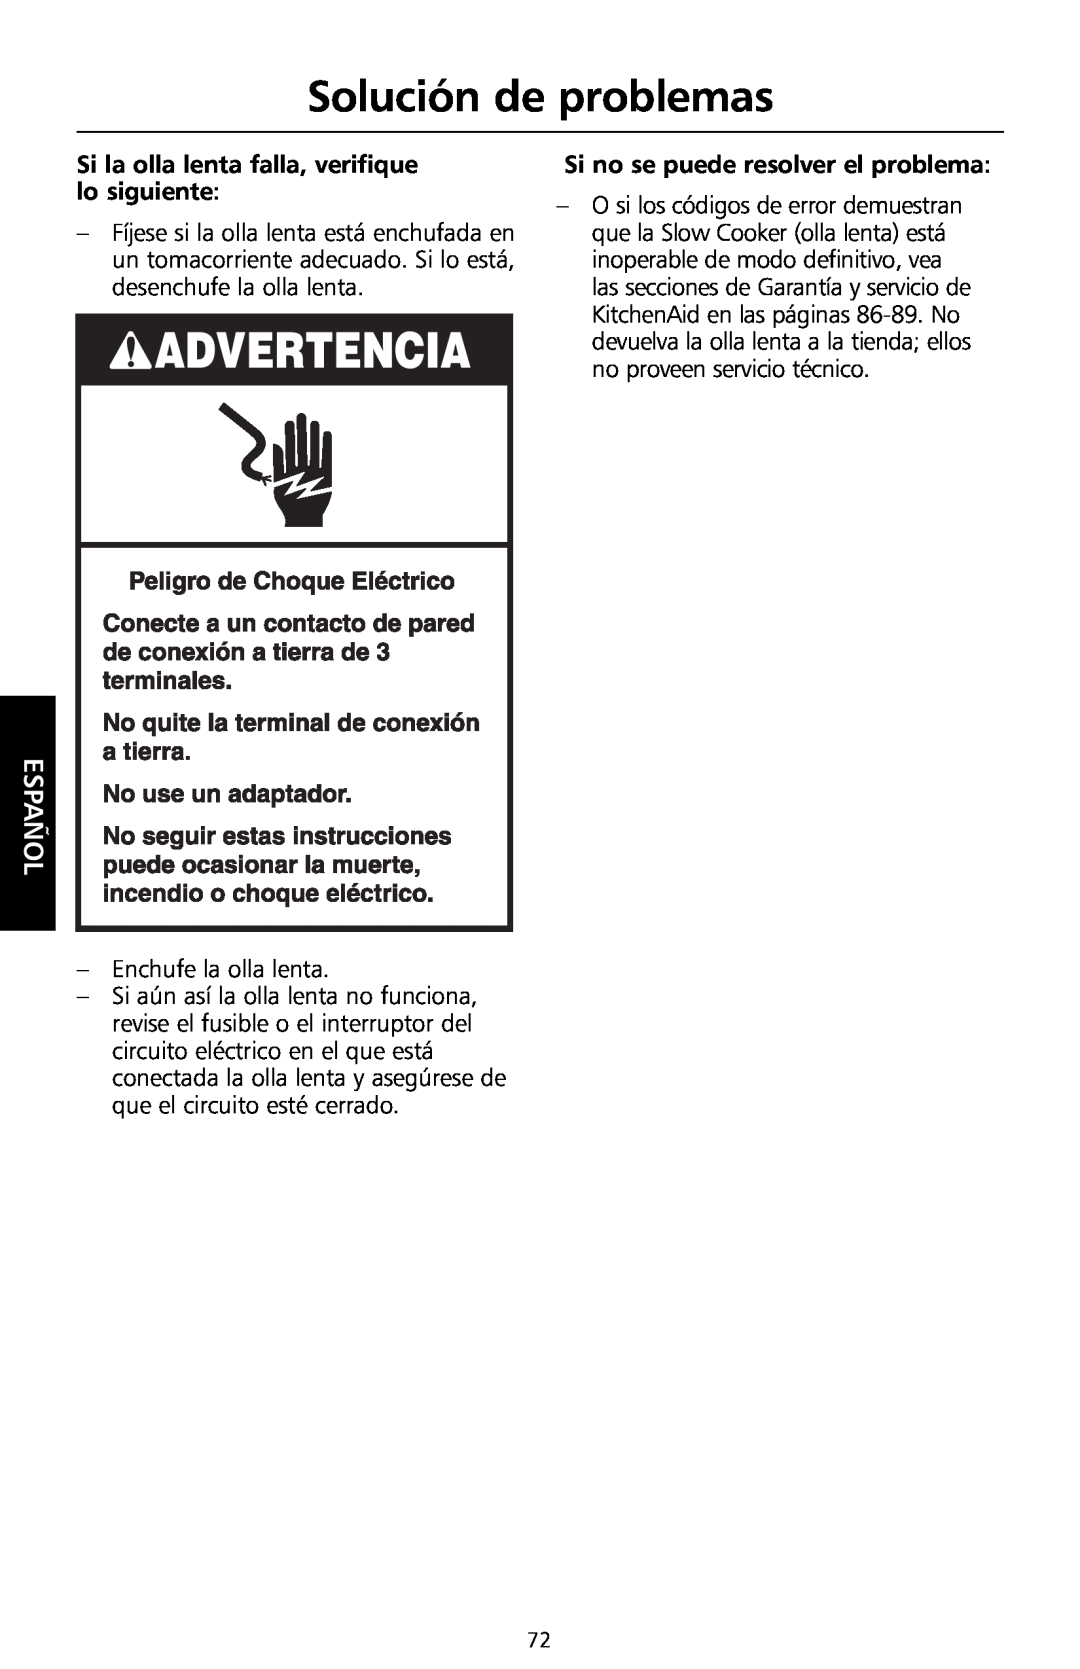 KitchenAid KSC700 manual Solución de problemas, Si la olla lenta falla, verifique lo siguiente, Español 